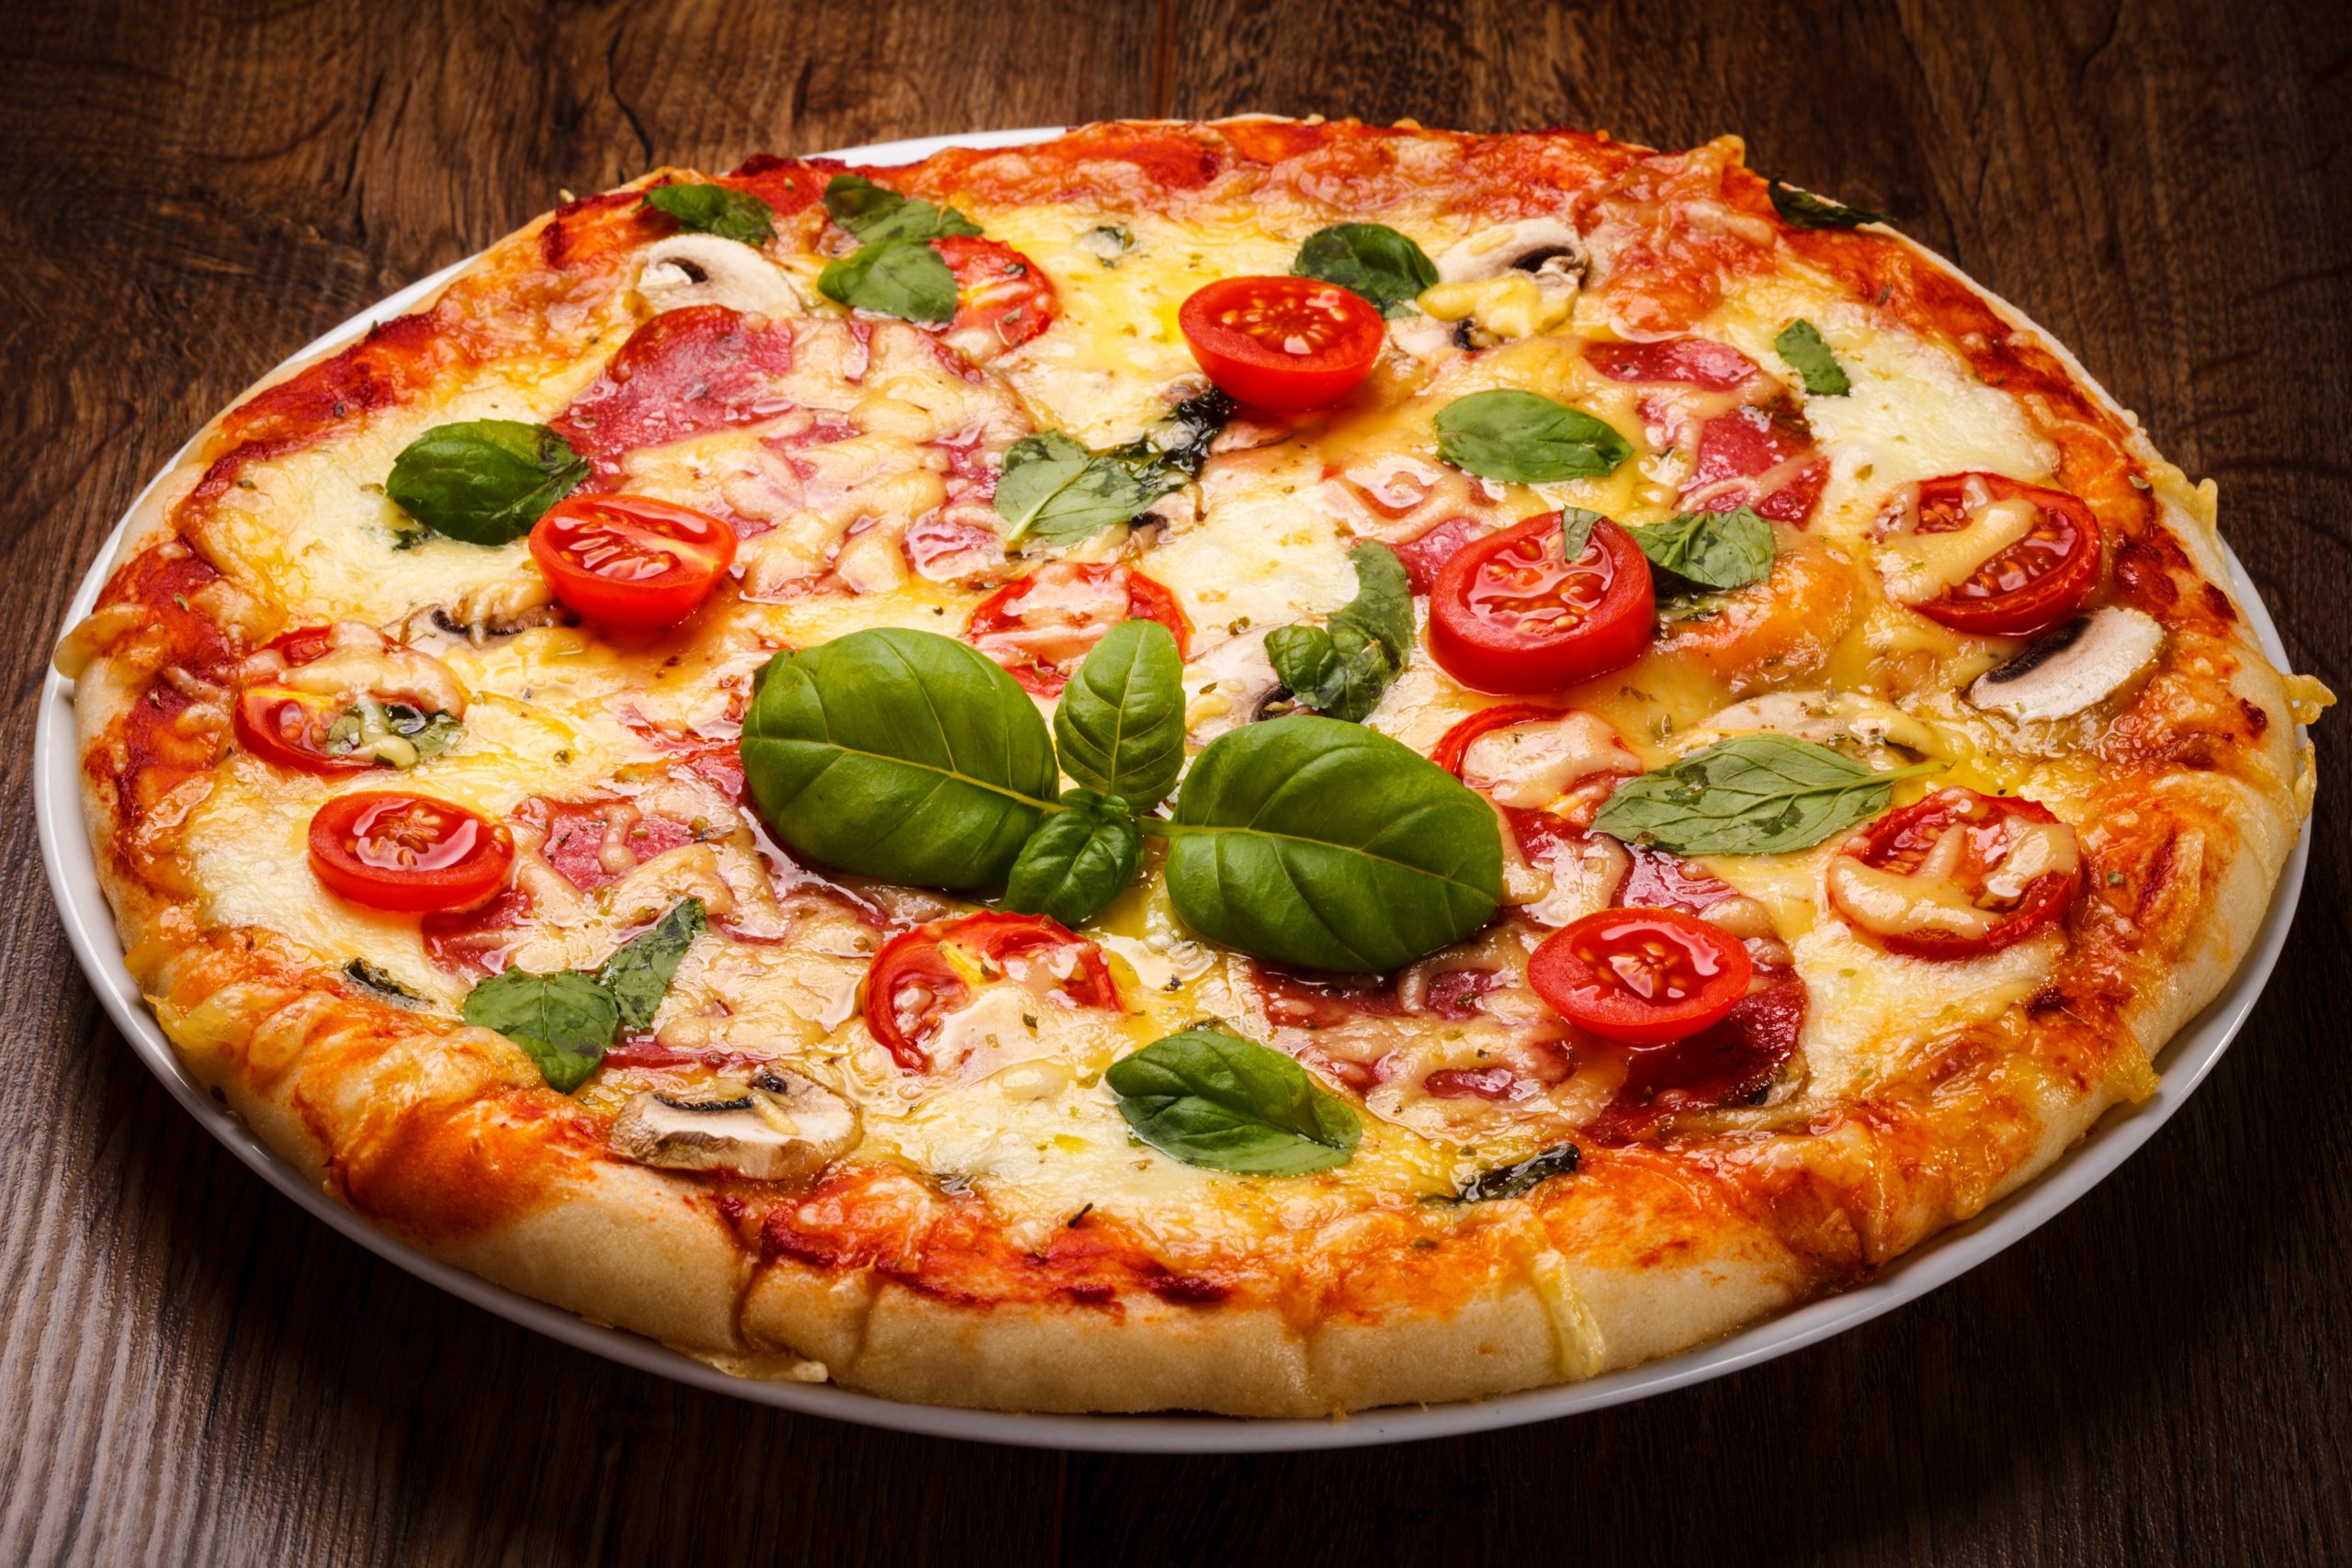 Pizza de Mussarela: A Clássica e Irresistível Delícia Italiana